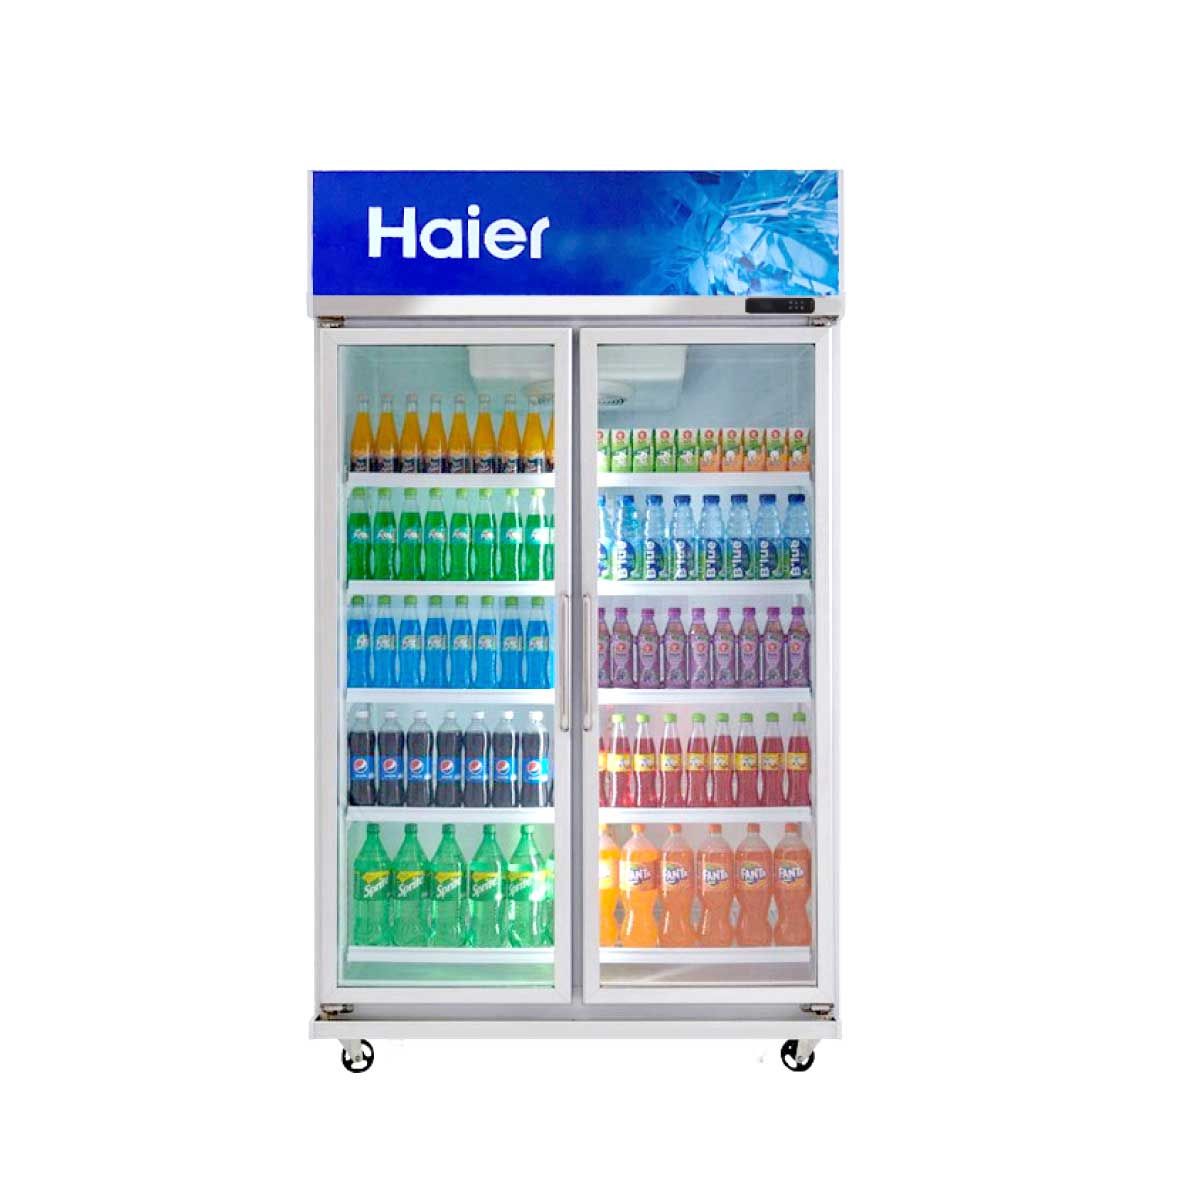 HAIER ตู้แช่เย็น 2 ประตู รุ่น SC1400PCS2L ความจุ 27.0 คิว  763 ลิตร